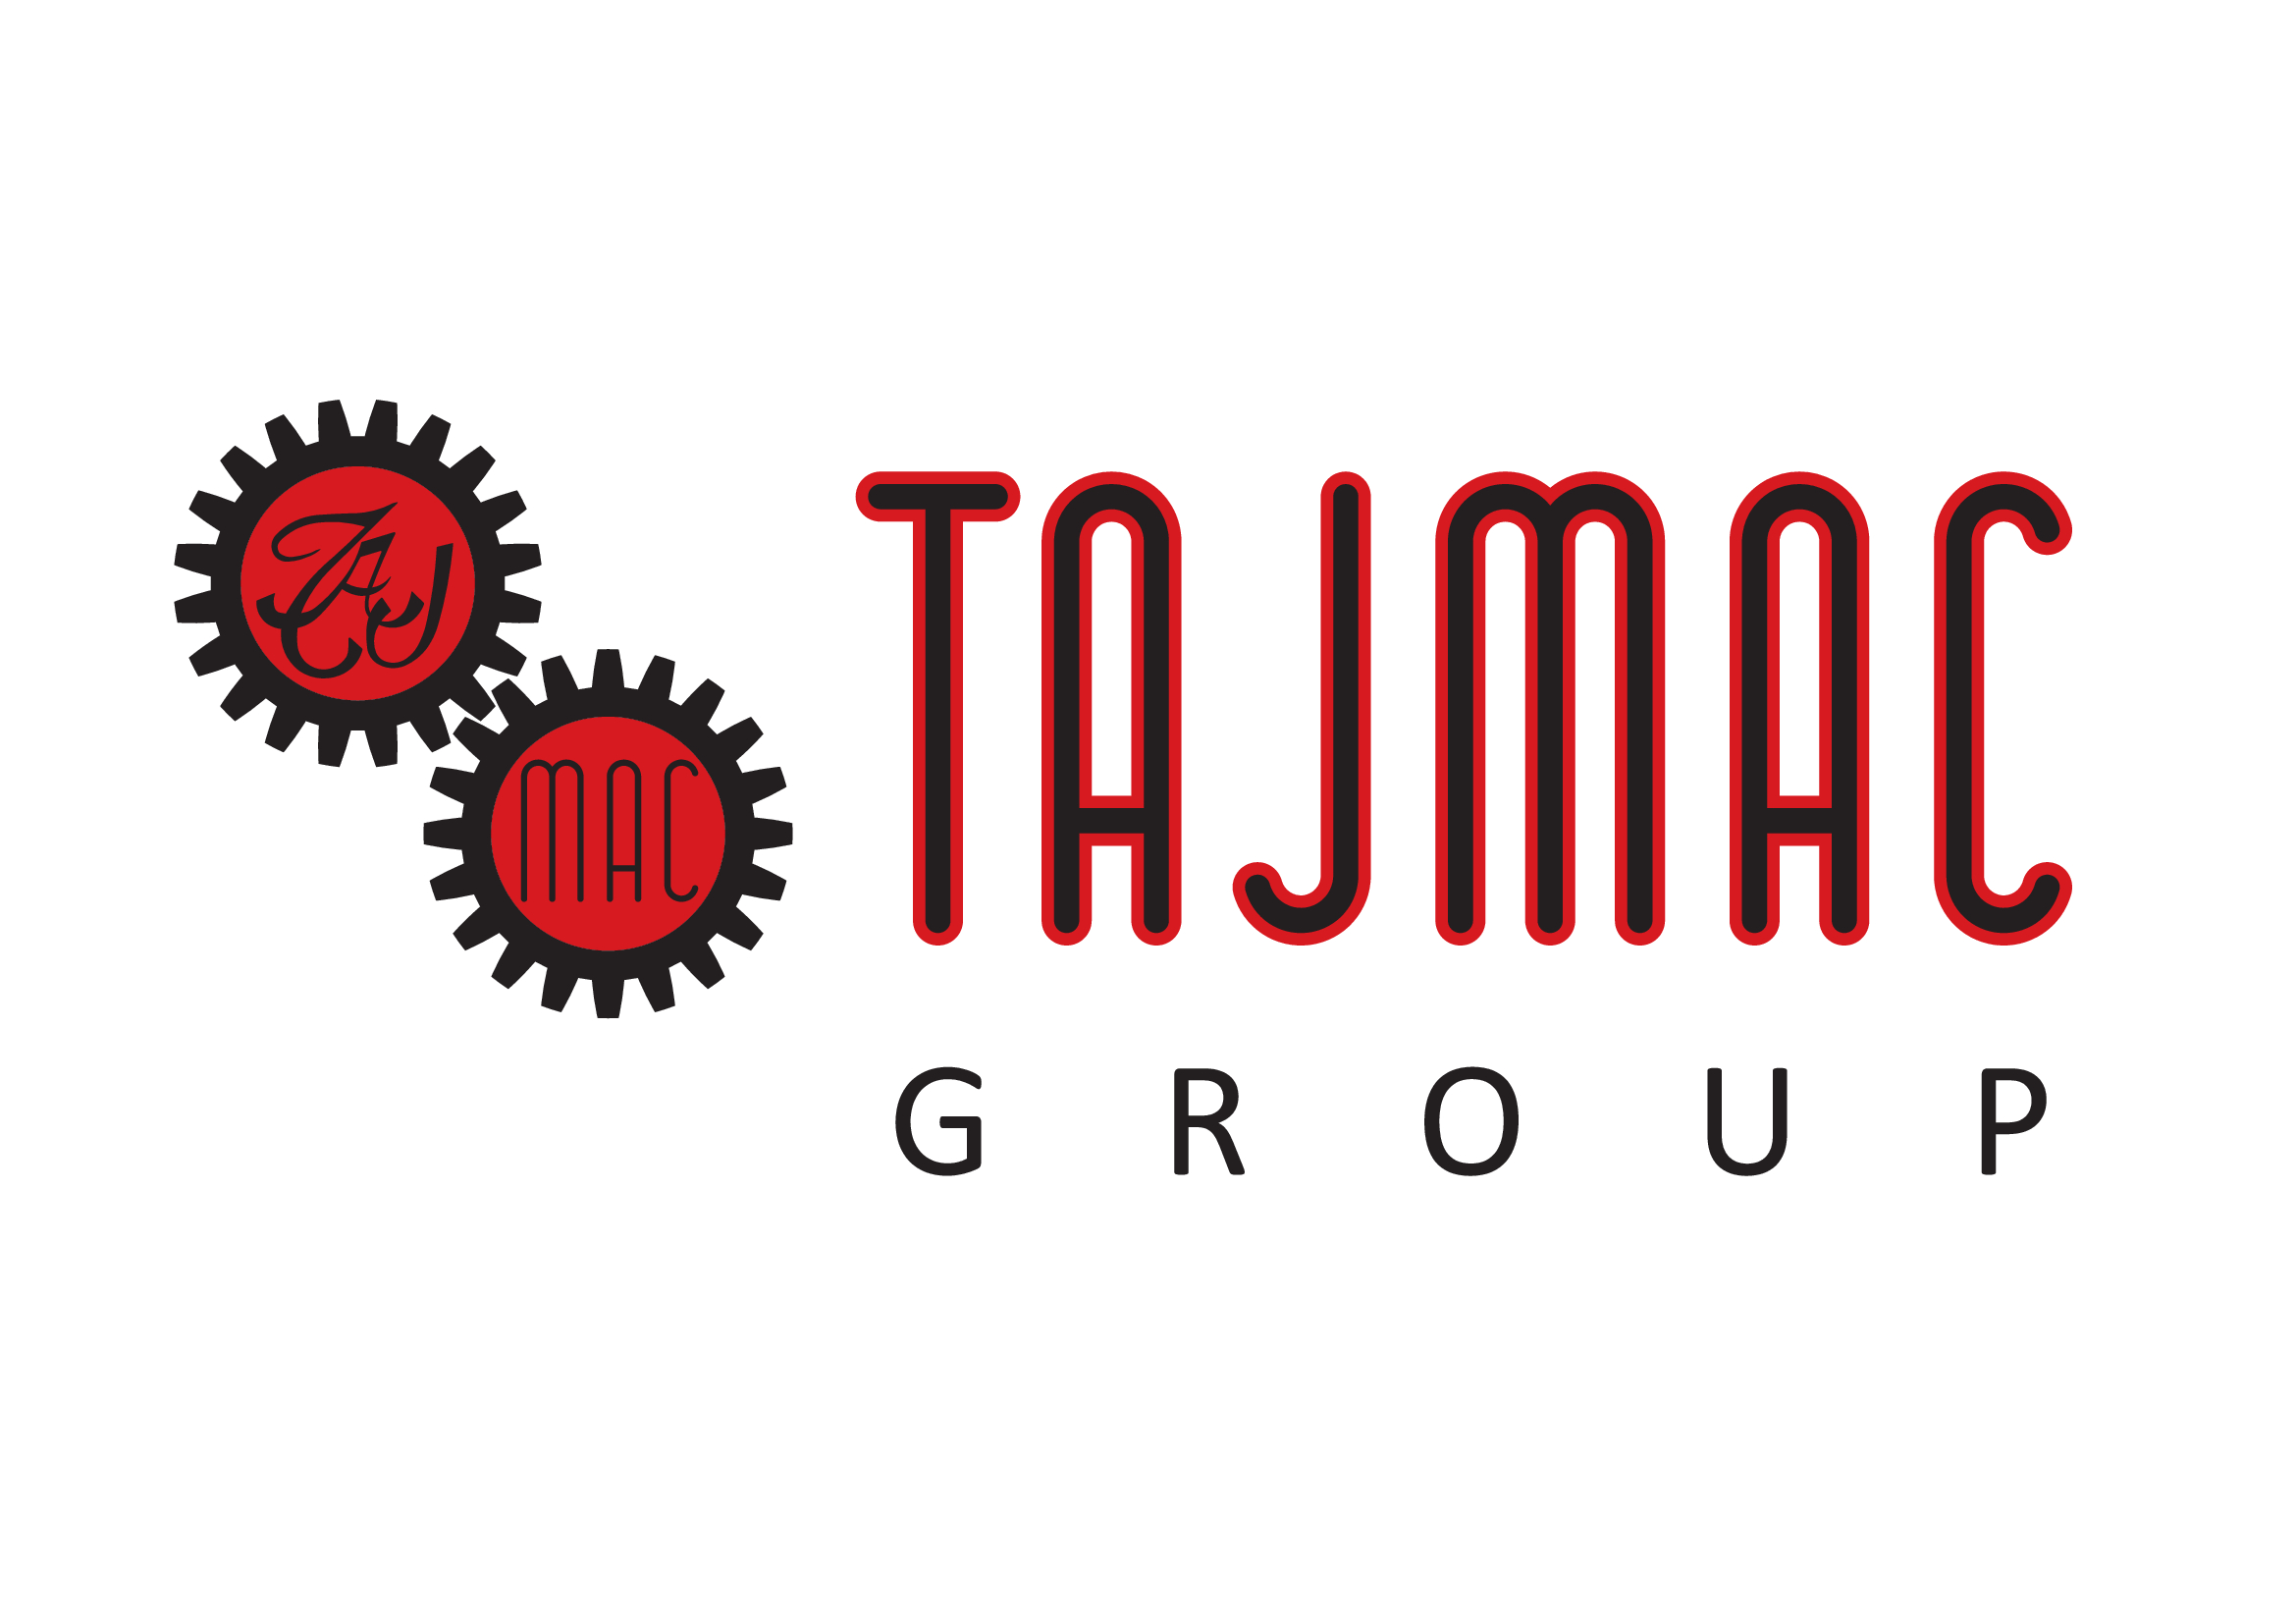 Tajmac group